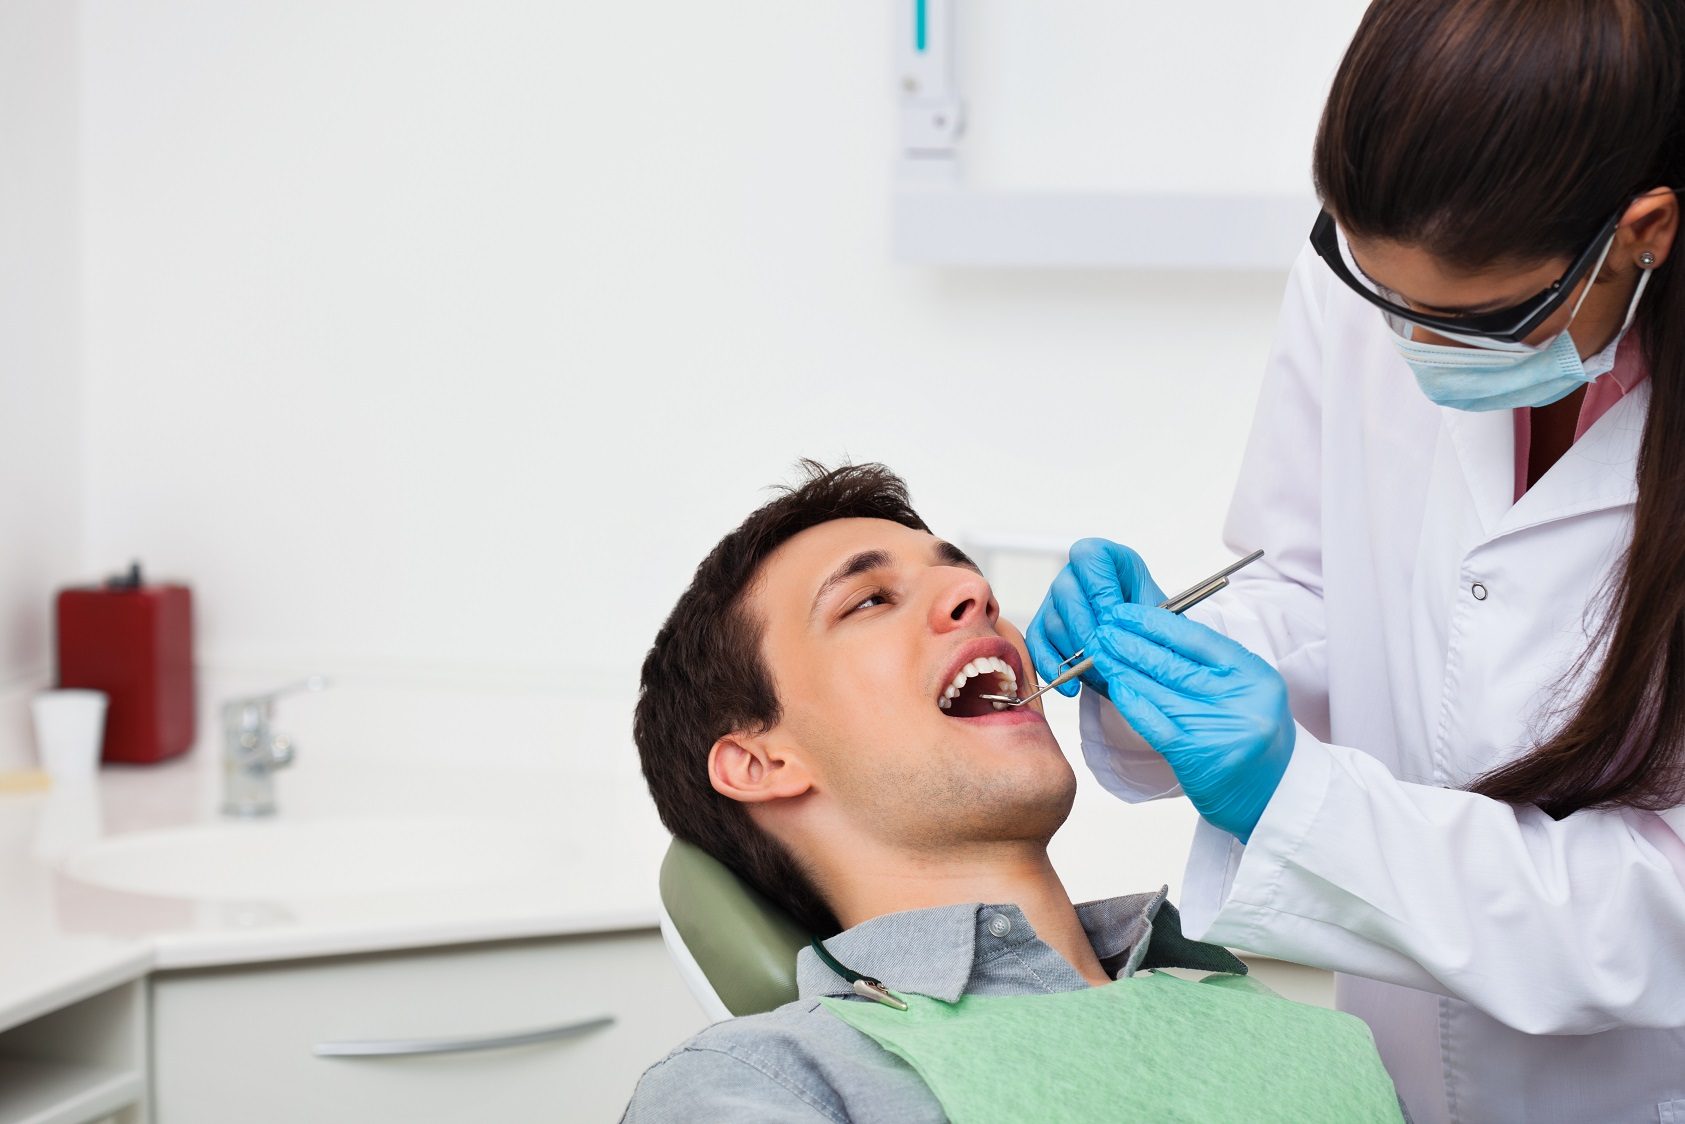 Este próximo Día del Padre regala salud bucodental, regala los servicios de Clínica Dental Cuadrado